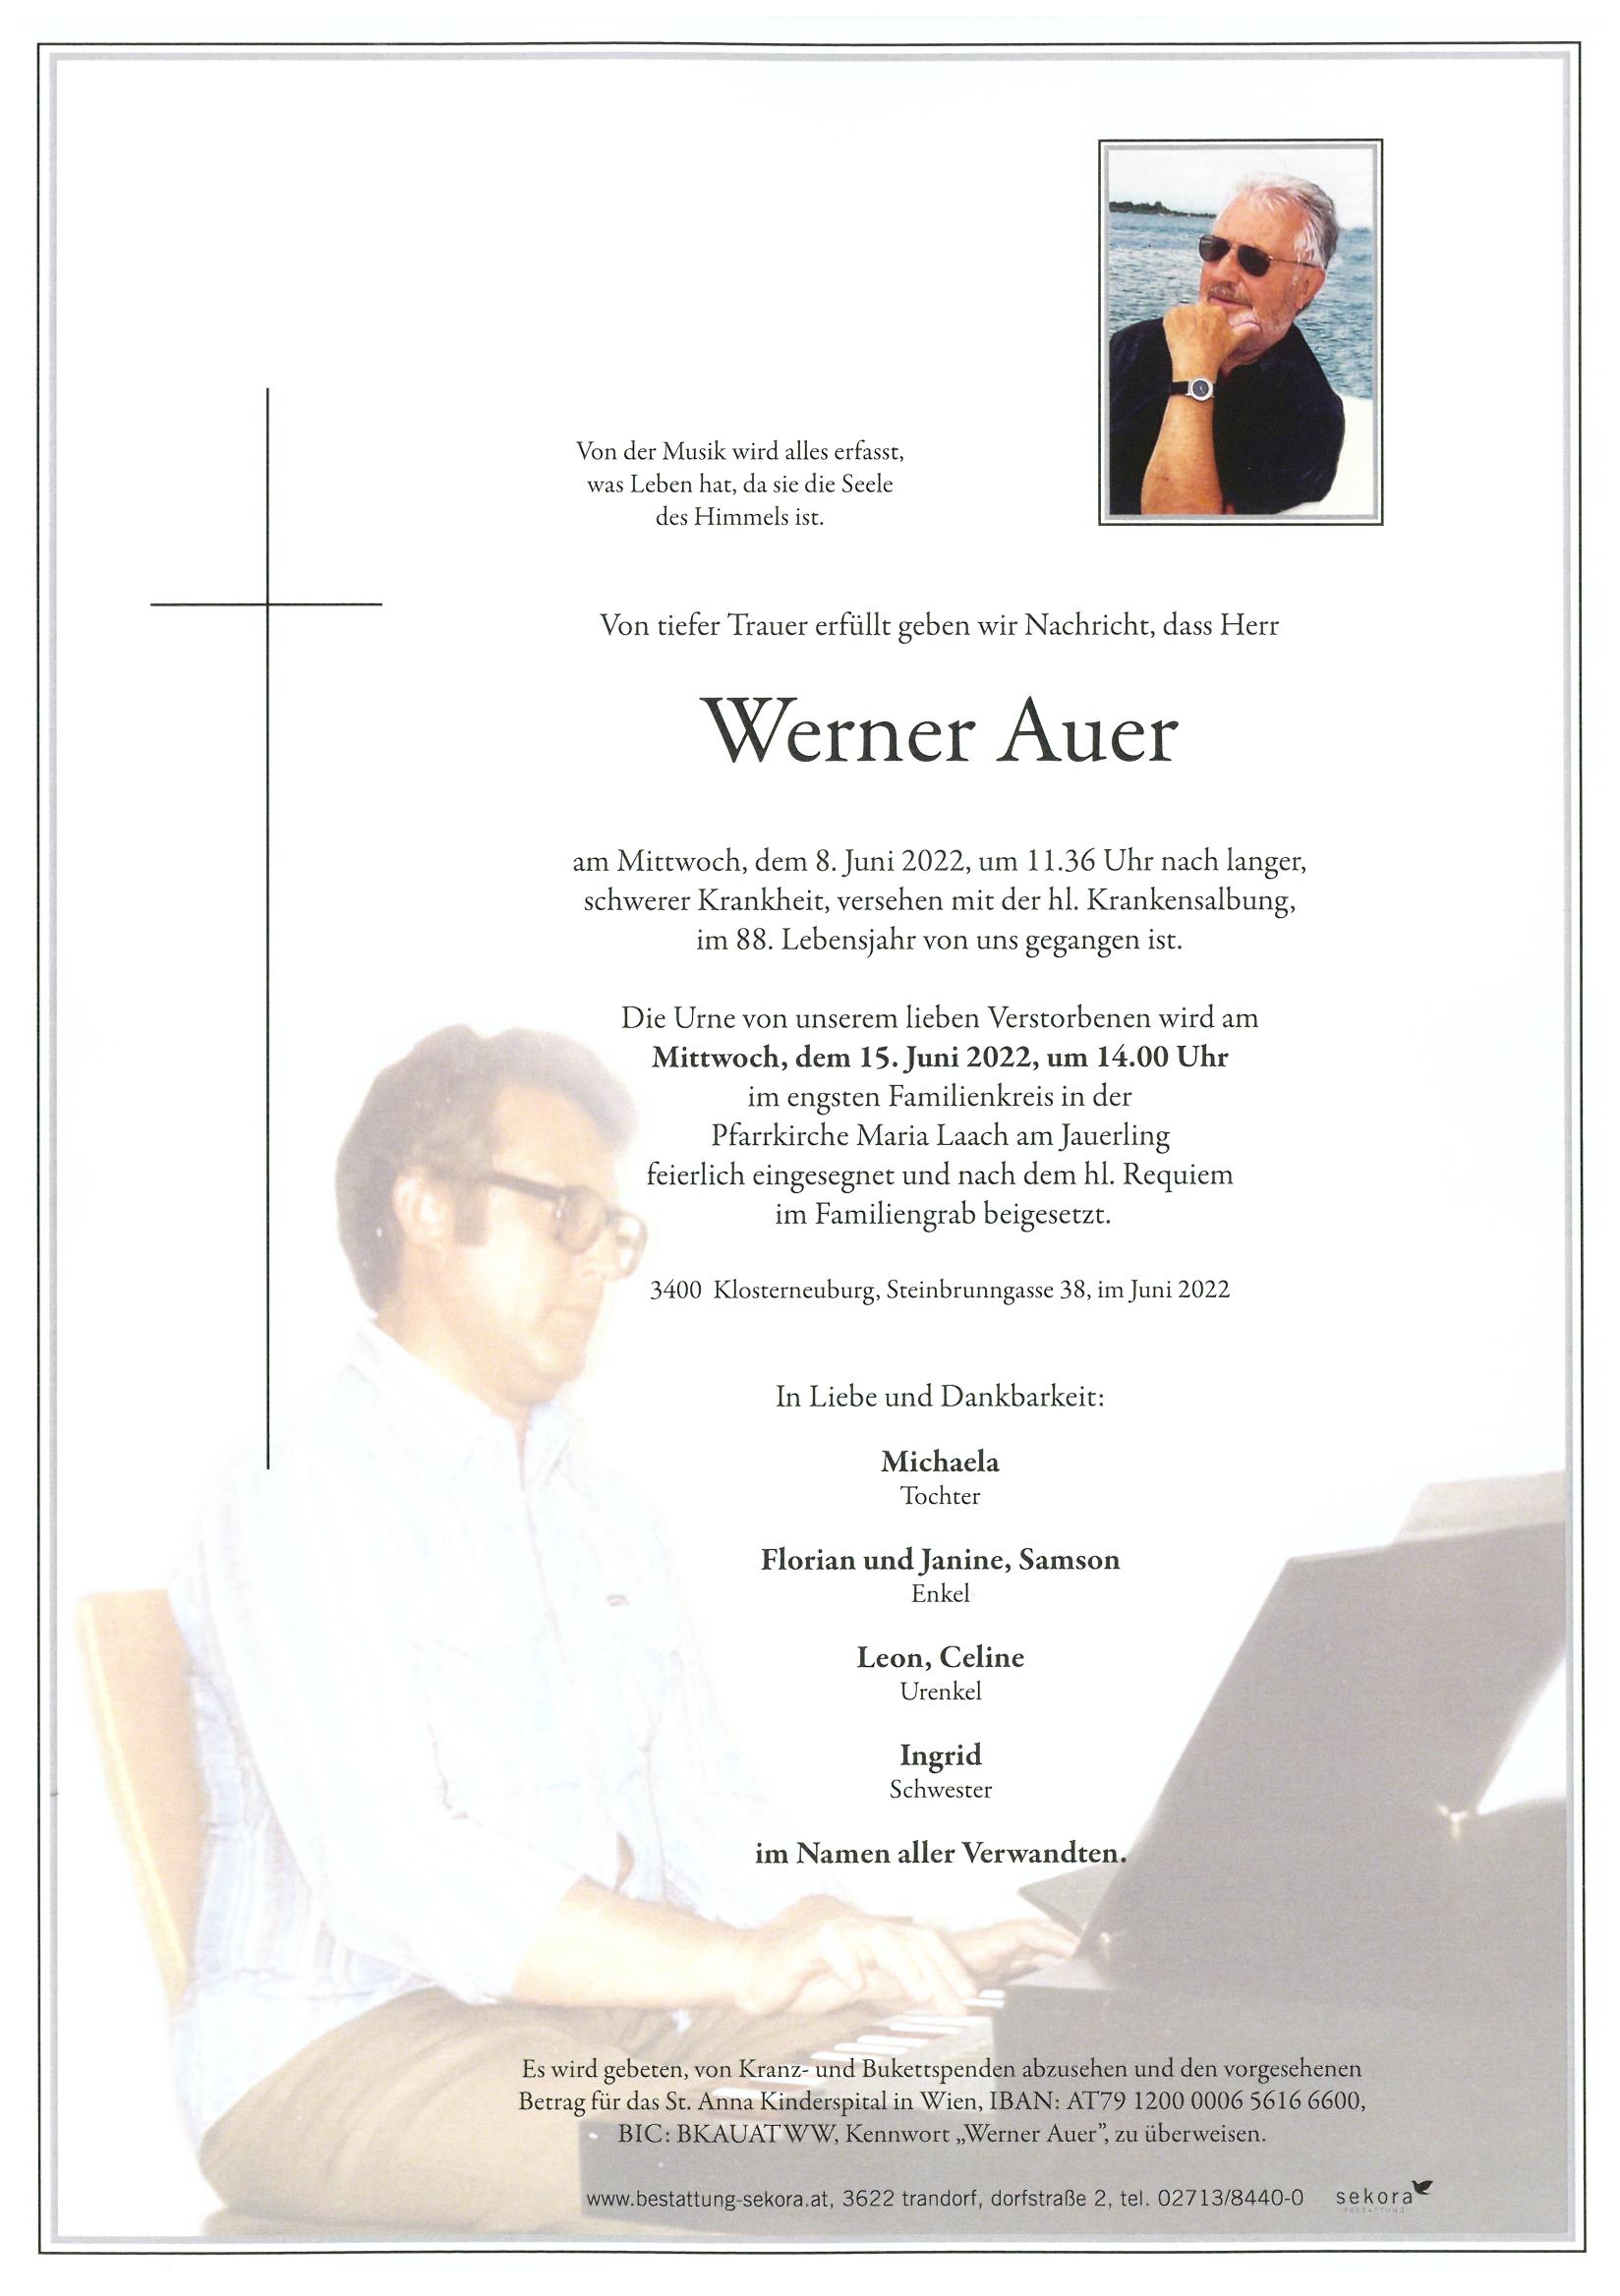 Auer Werner Bestattung Sekora